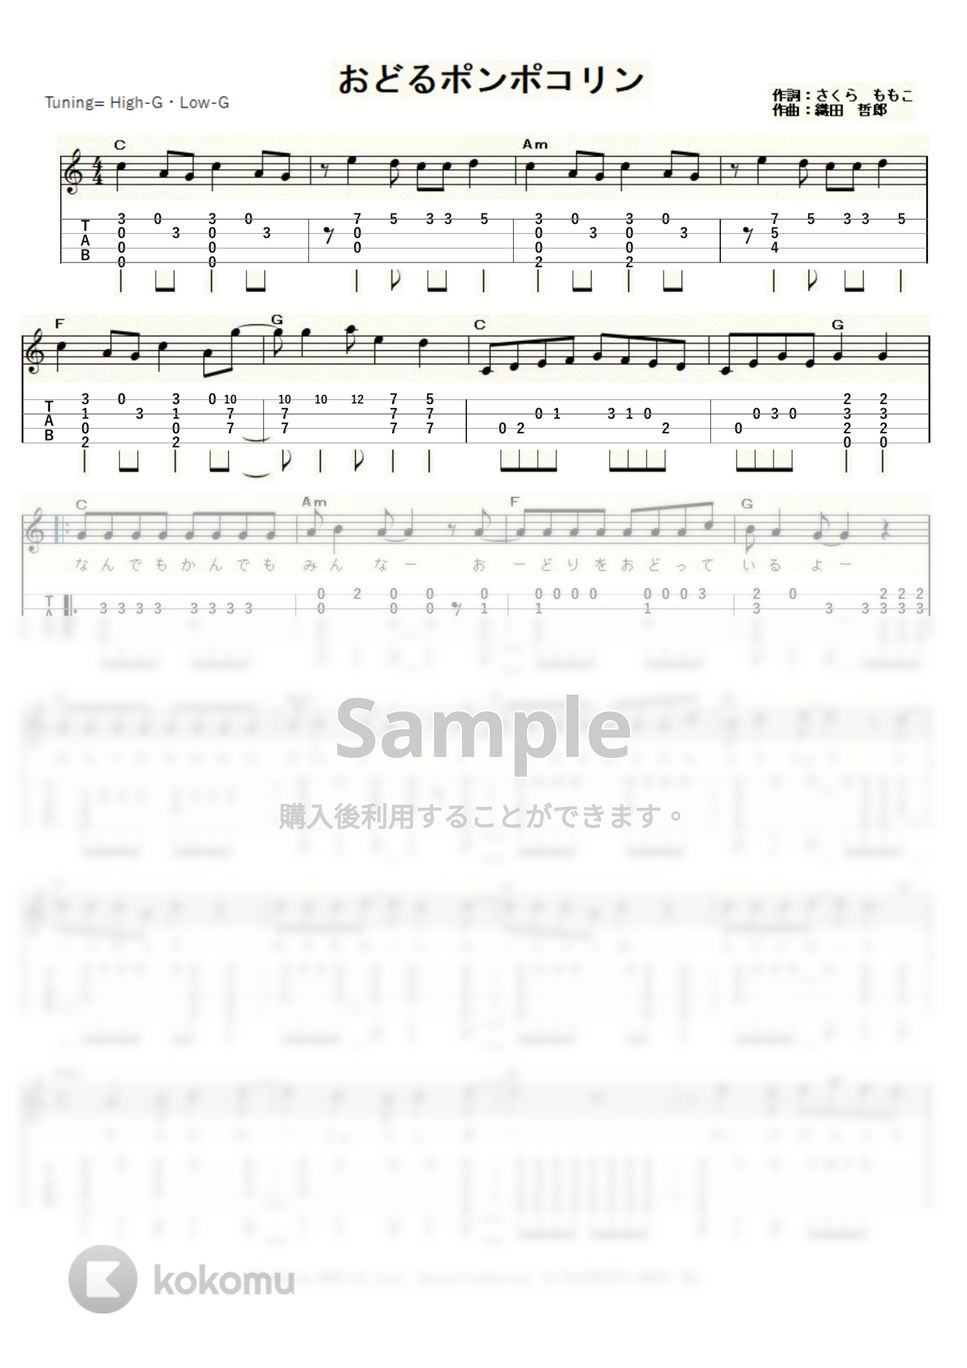 ちびまる子ちゃん - おどるポンポコリン (ｳｸﾚﾚｿﾛ / High-G,Low-G / 中級) by ukulelepapa